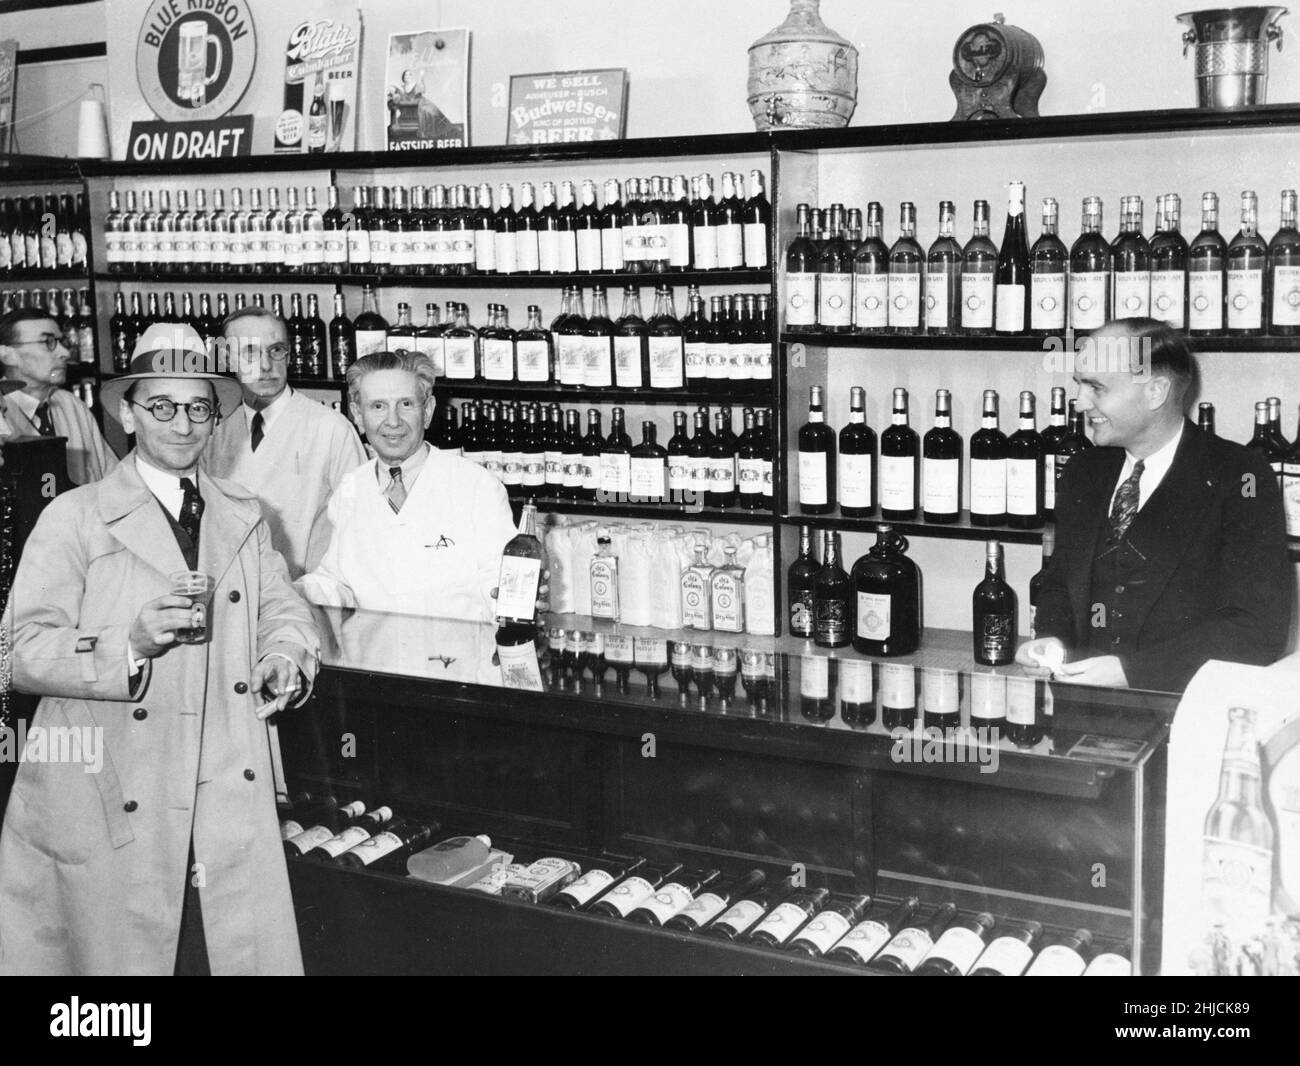 Ein gut sortierter Spirituosenladen von Los Angeles erwartet Sie 1933. Das Verbot endete mit der Ratifizierung des 21. Änderungsantrags, der den 18. Änderungsantrag am 5. Dezember 1933 aufhob. Das Verbot dauerte von 1920 bis 1933. Stockfoto